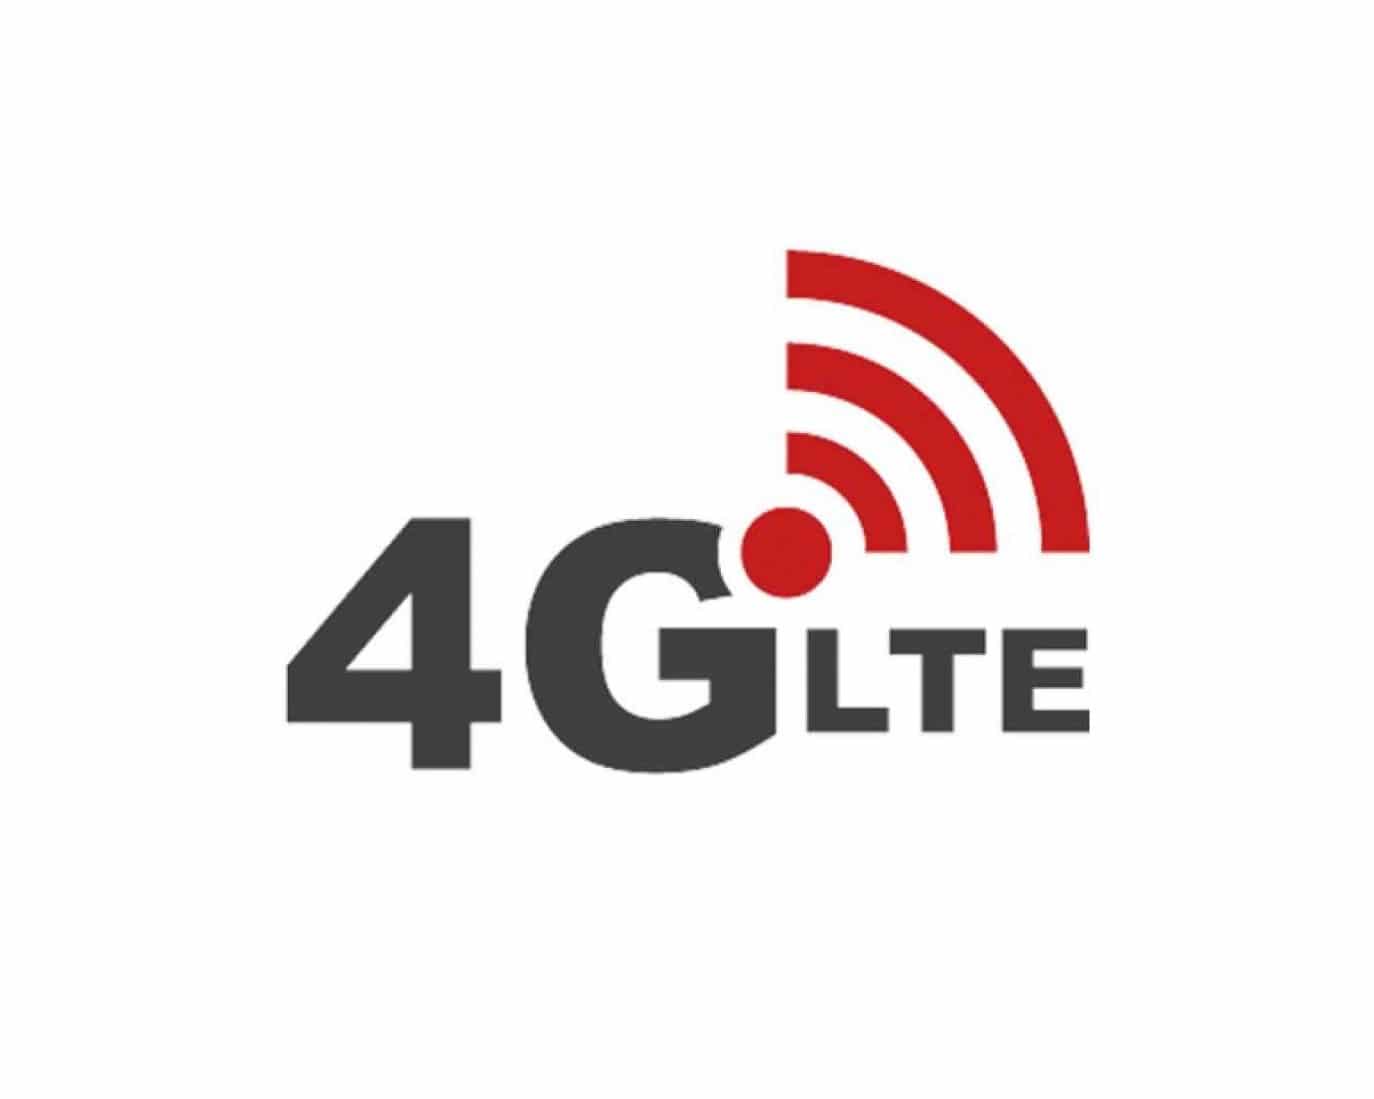 4G - LTE Long-Term Evolution - Стандарт беспроводной высокоскоростной передачи данных